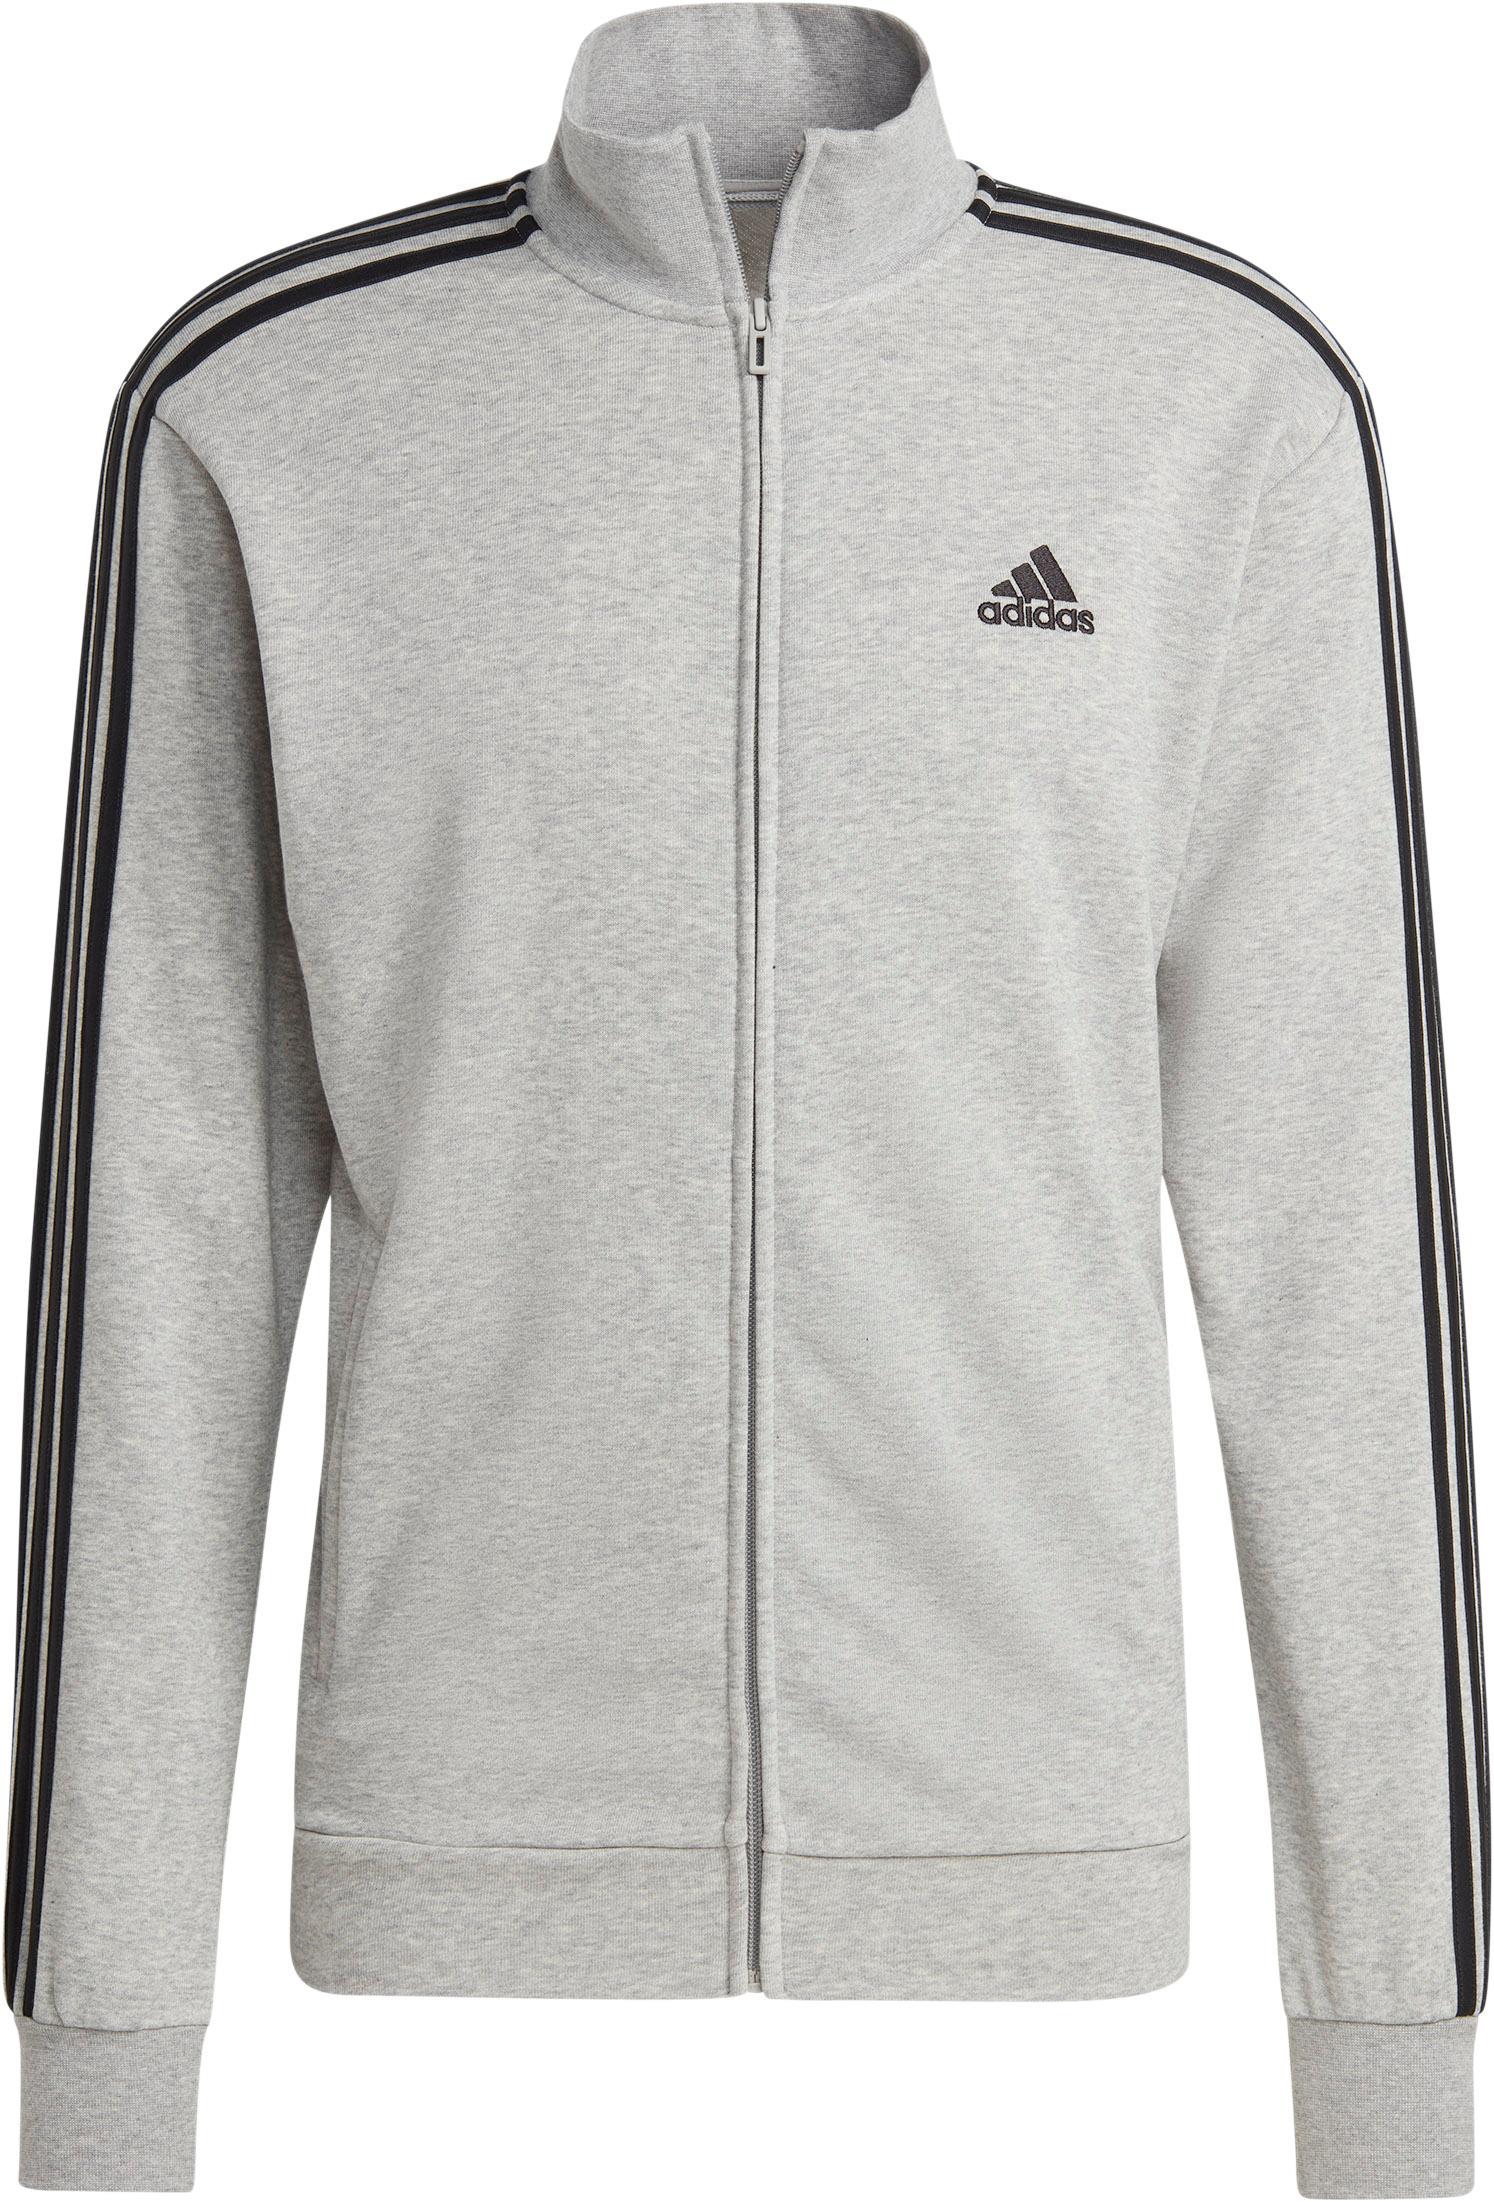 Adidas BASIC 3-STREIFEN FRENCH TERRY Trainingsanzug Herren medium grey  heather-black im Online Shop von SportScheck kaufen